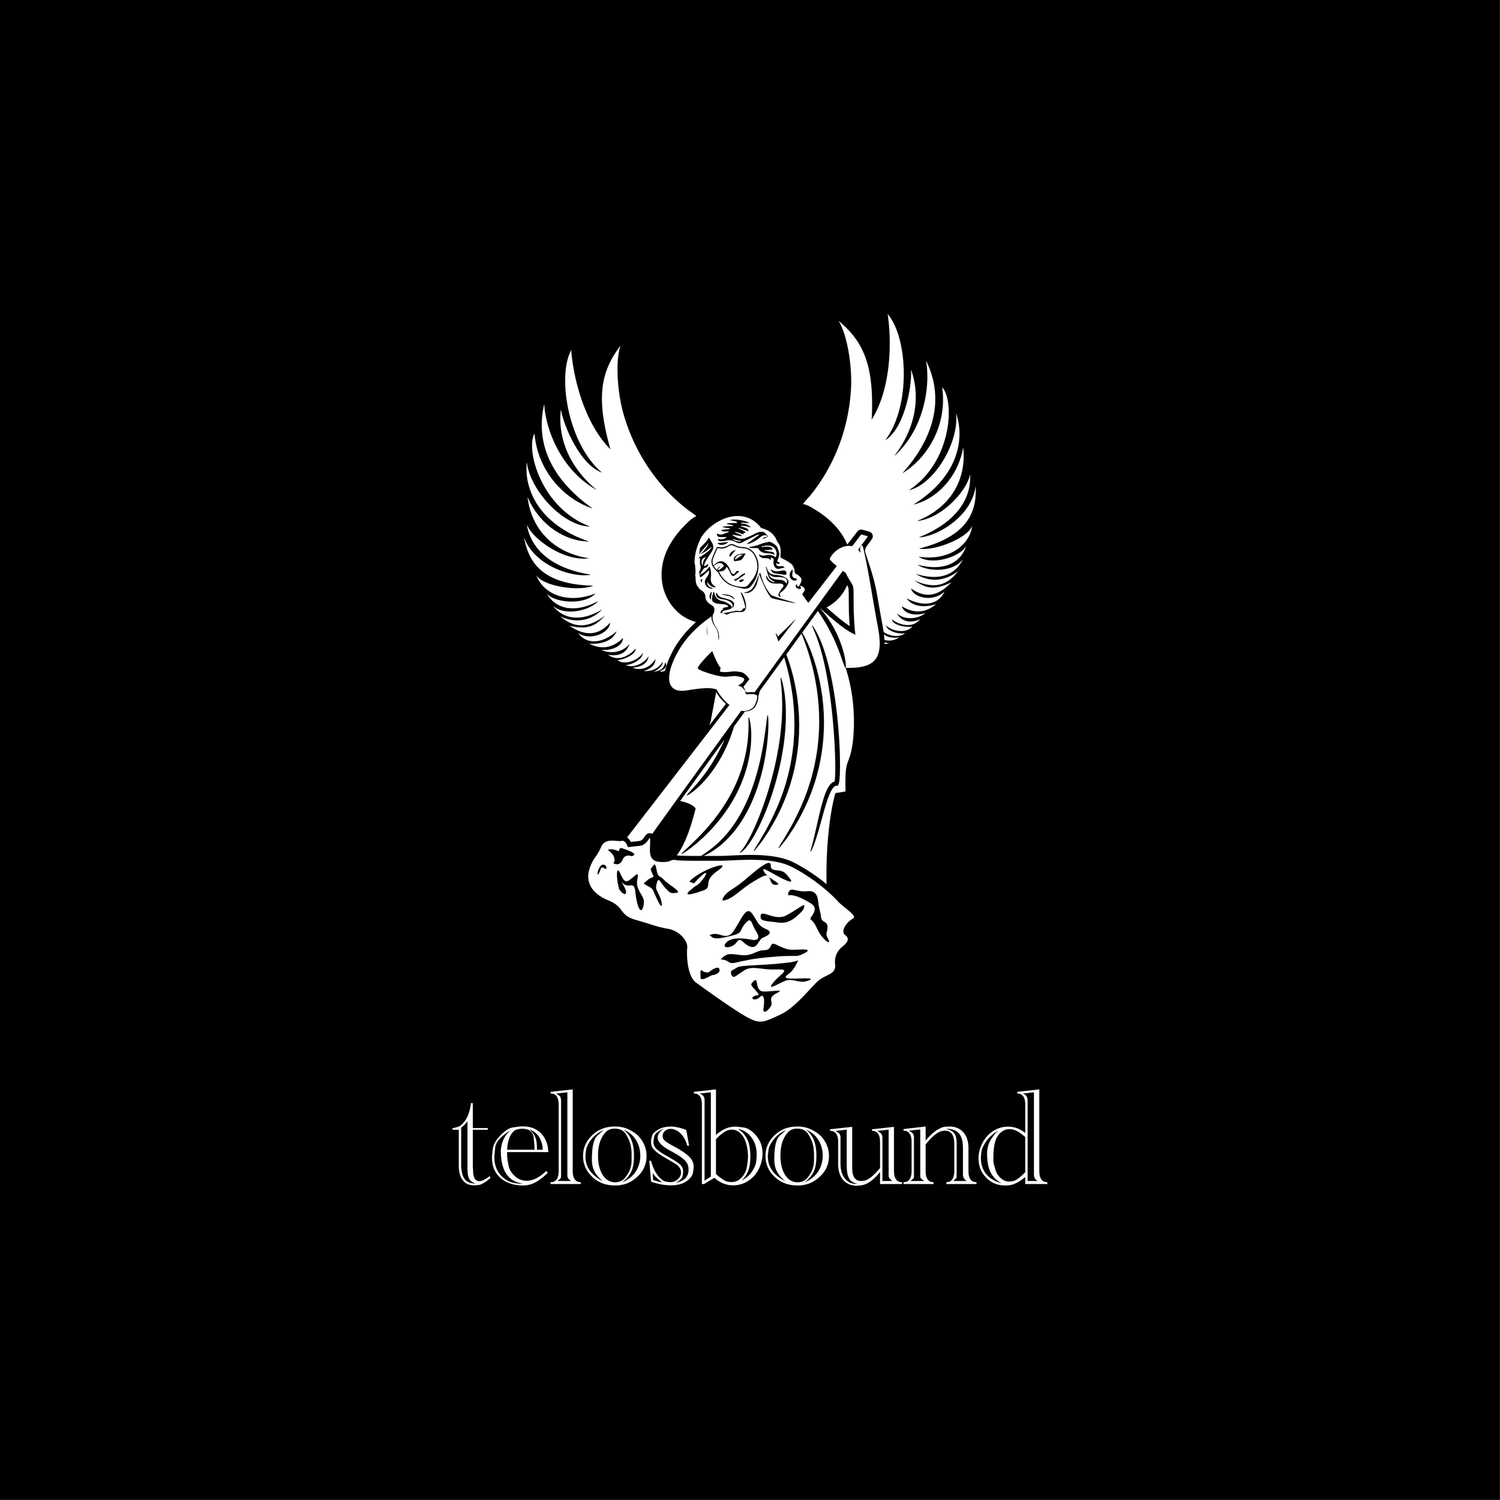 Telosbound Institute